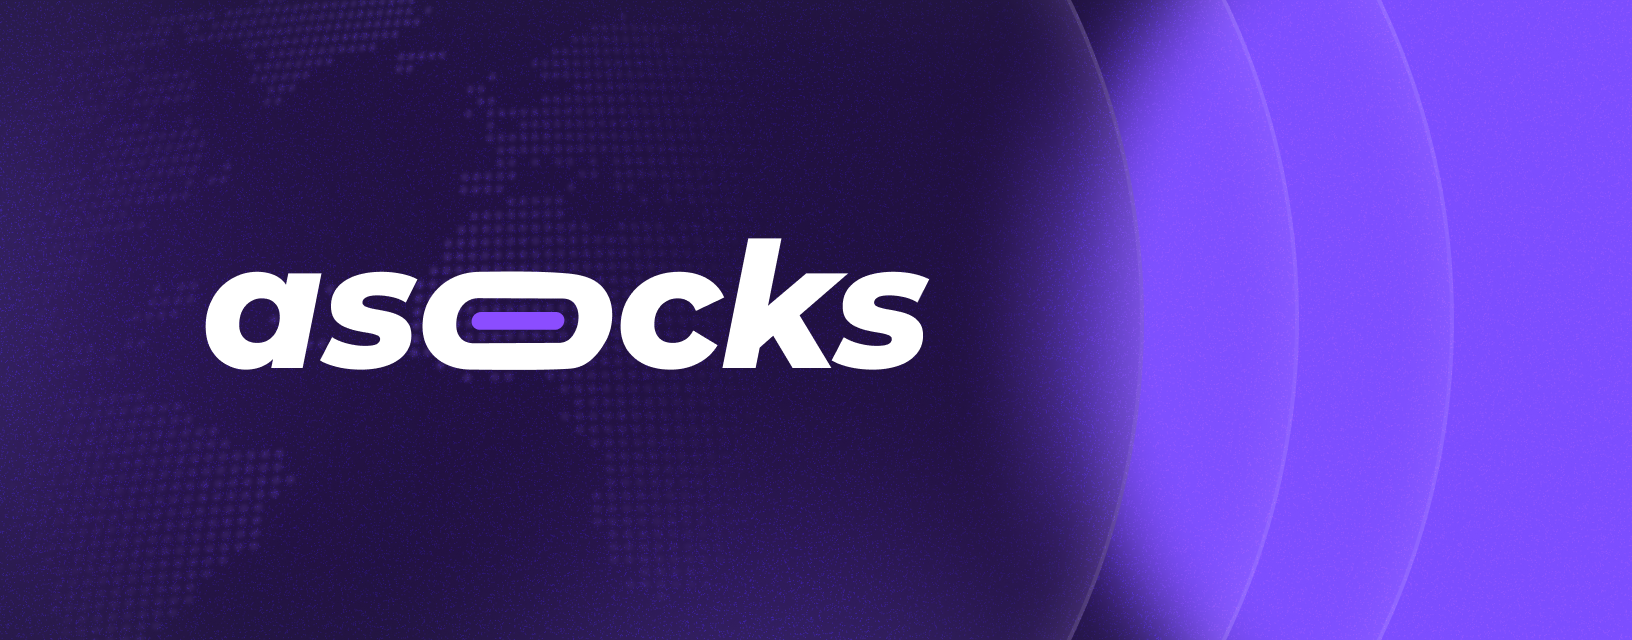 asocks_desktop